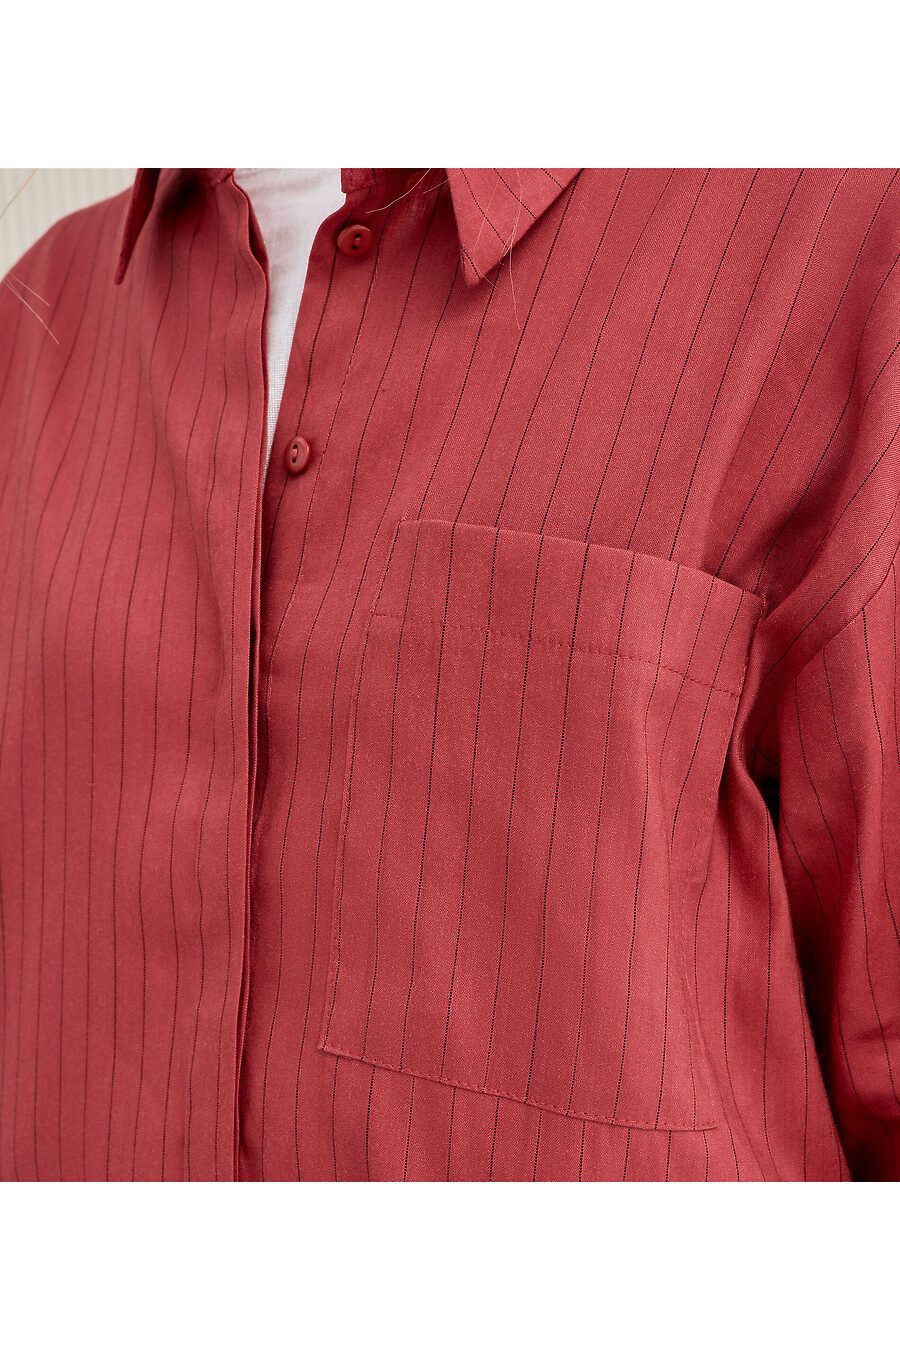 Блуза для женщин PANDA 796061 купить оптом от производителя. Совместная покупка женской одежды в OptMoyo